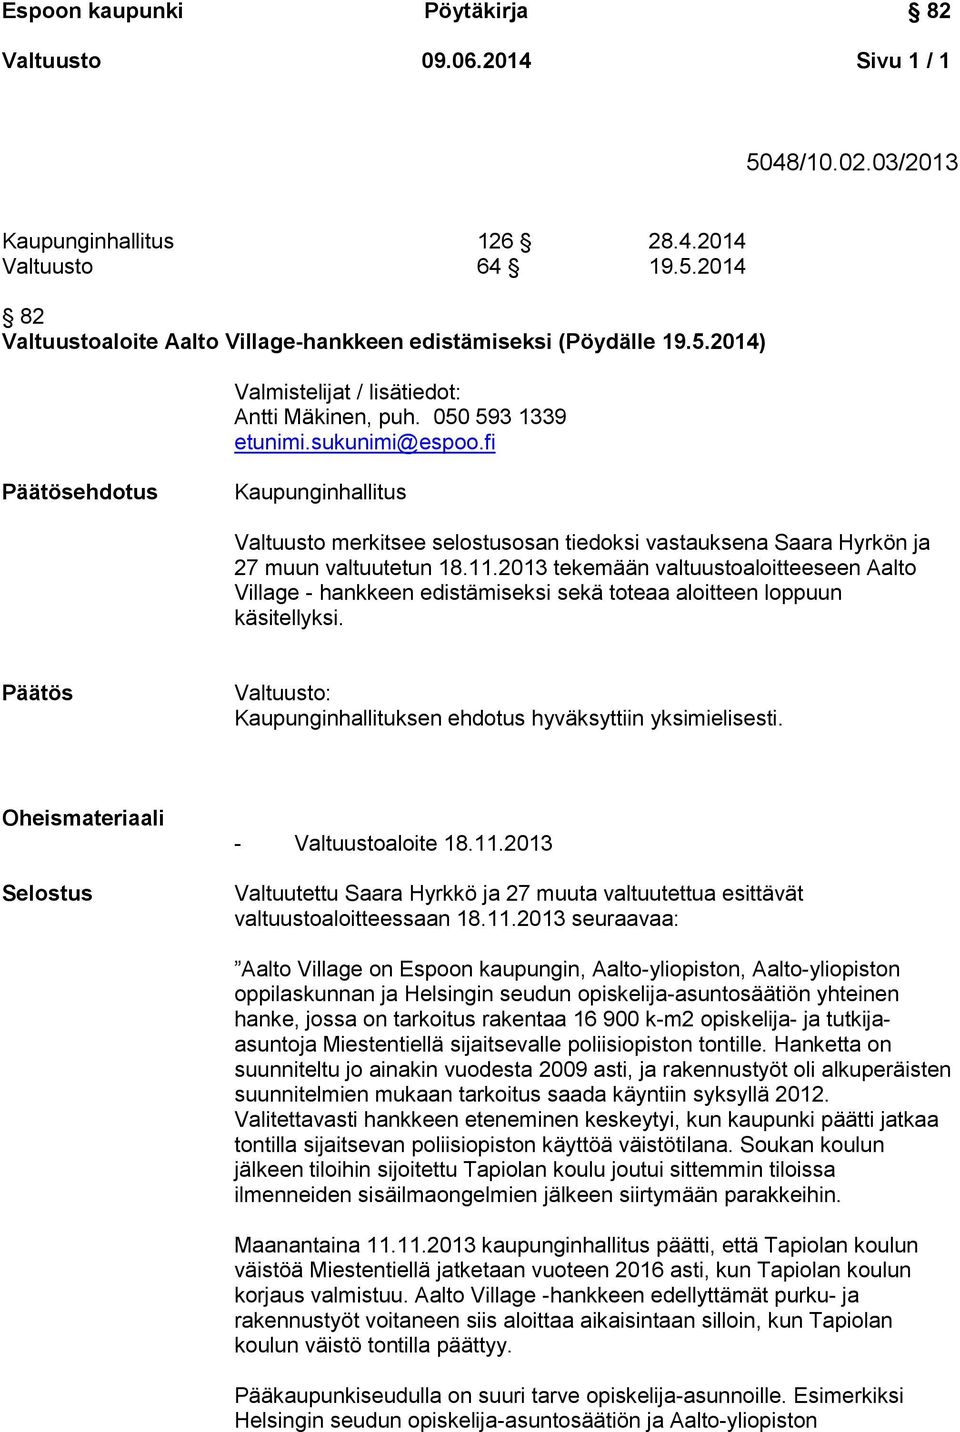 2013 tekemään valtuustoaloitteeseen Aalto Village - hankkeen edistämiseksi sekä toteaa aloitteen loppuun käsitellyksi. Valtuusto: Kaupunginhallituksen ehdotus hyväksyttiin yksimielisesti.